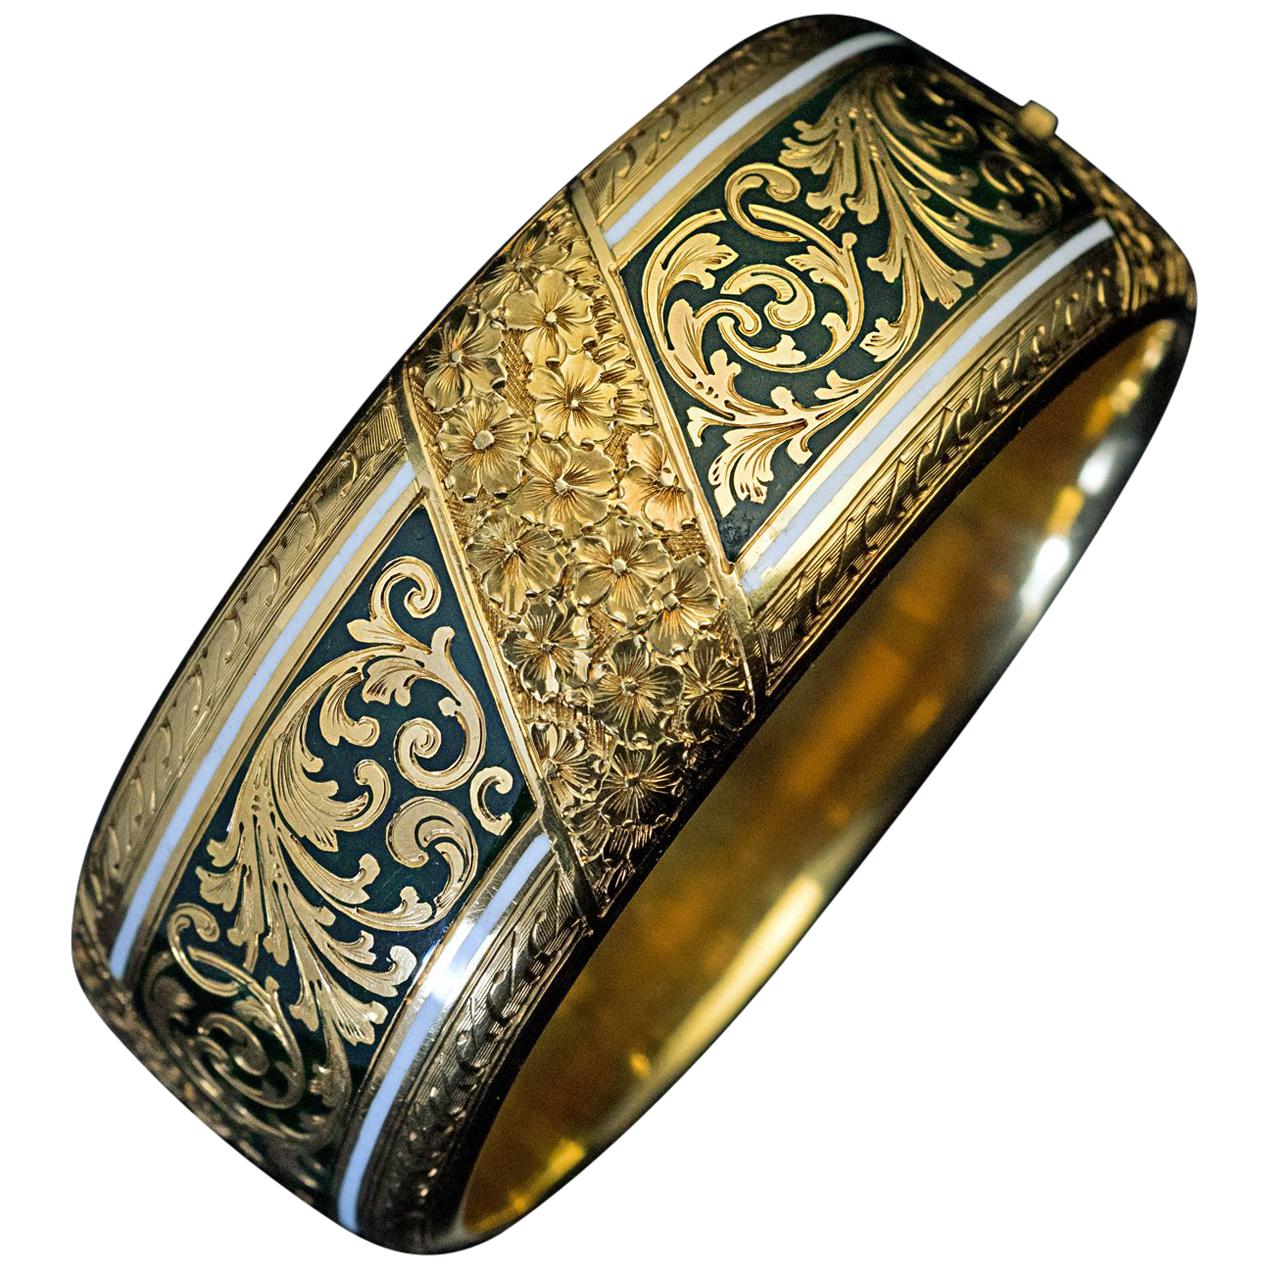 Exquisite Antique Victorian Two-Color Enamel Engraved Gold Cuff Bracelet